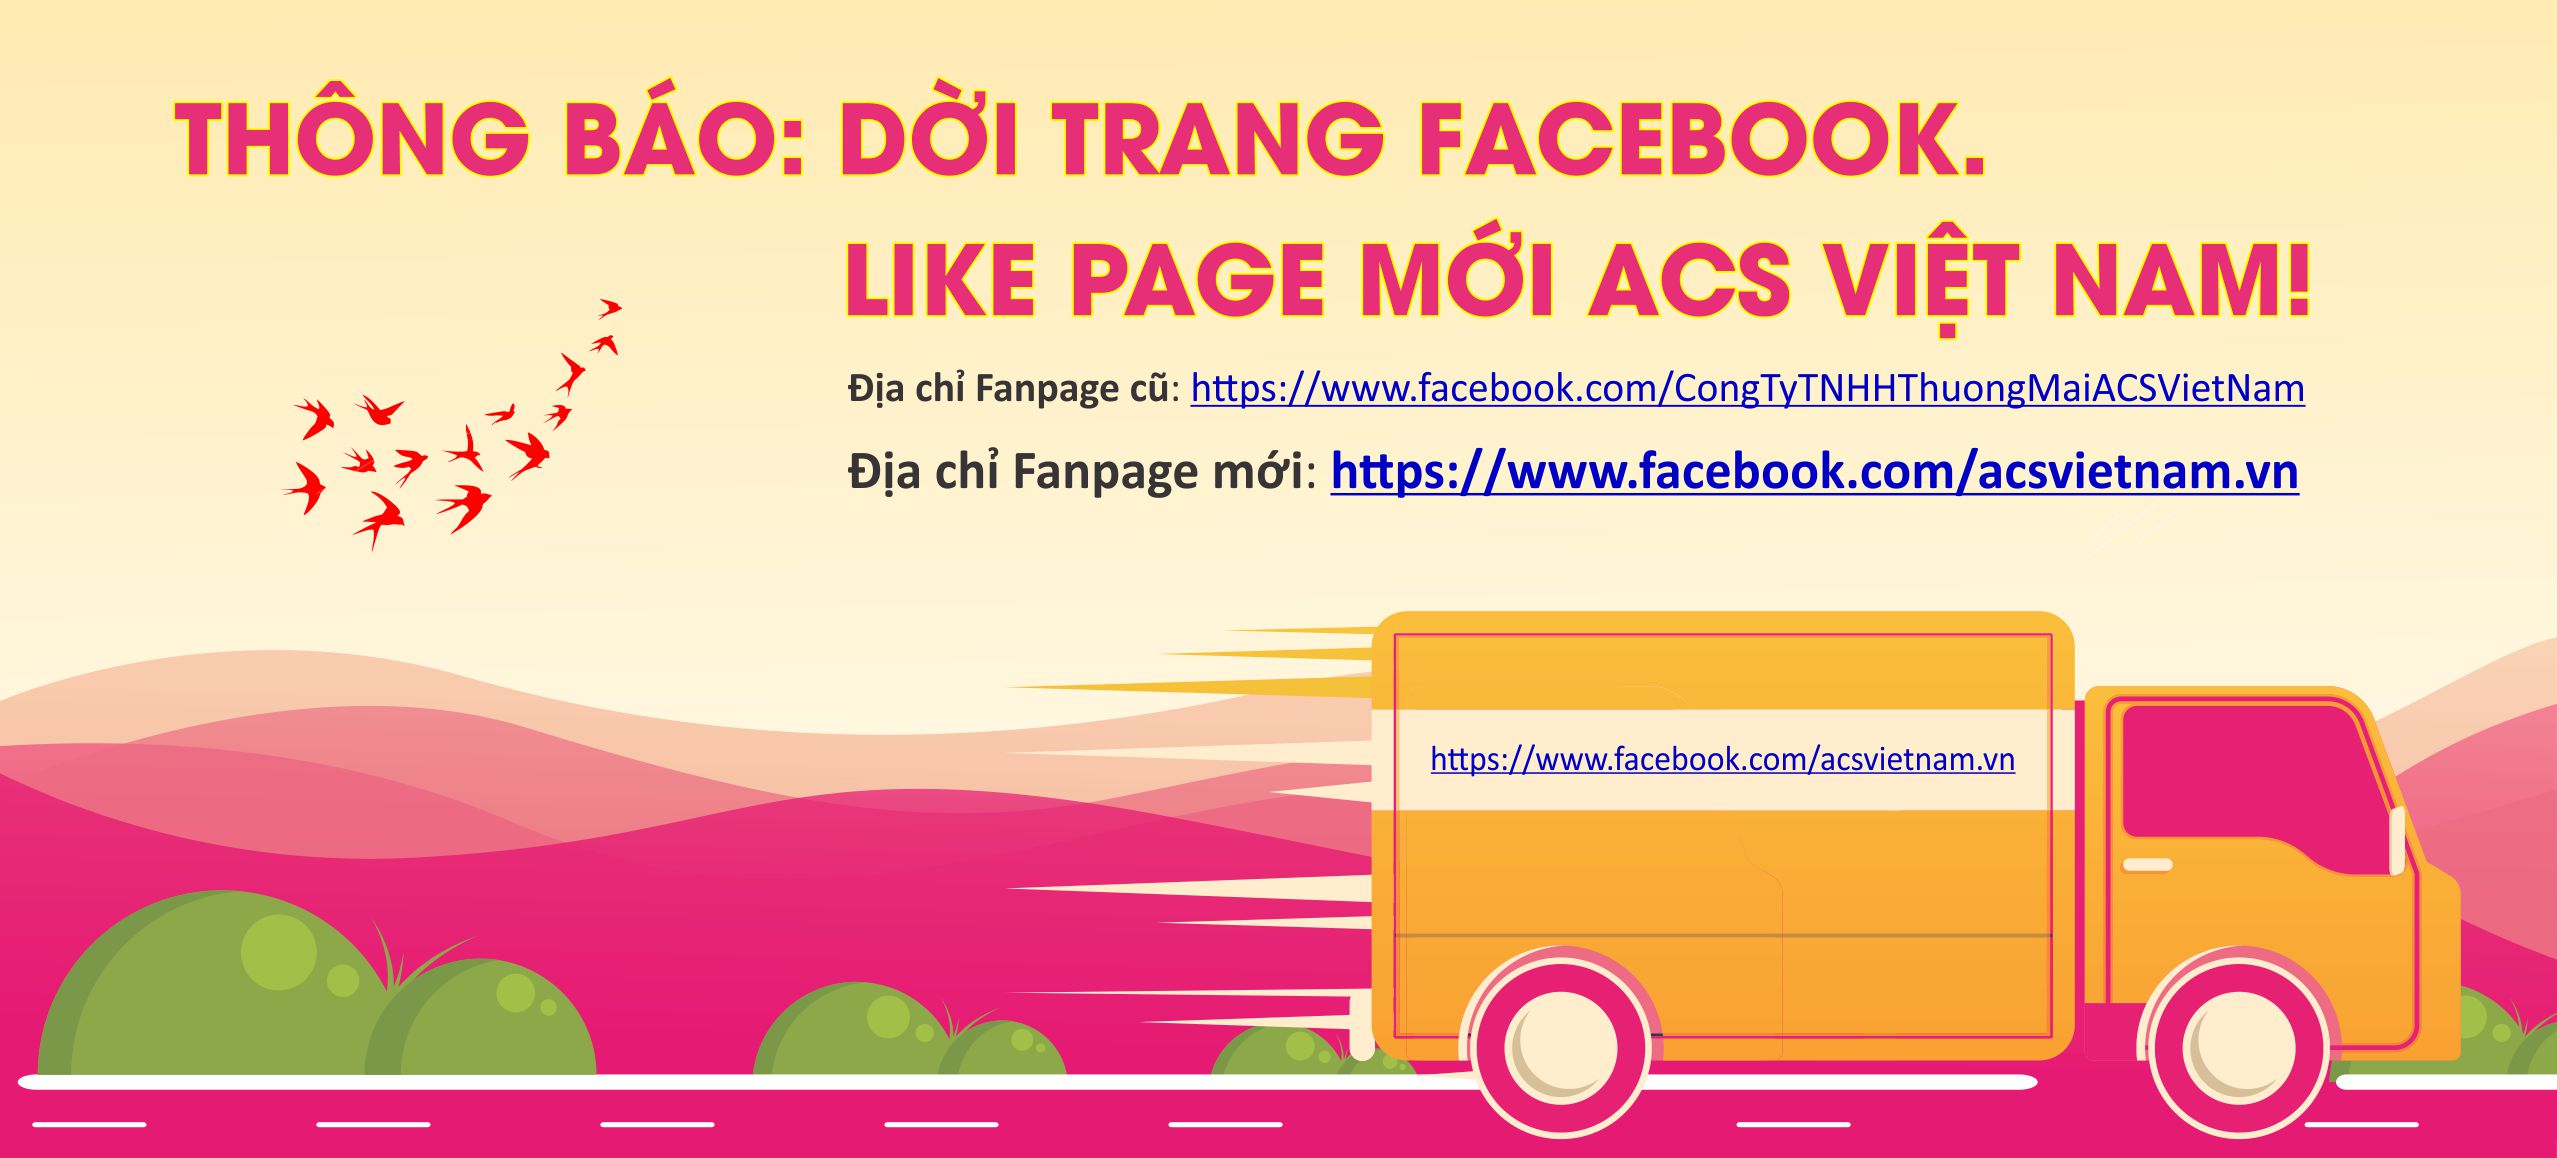 Thông báo: Dời trang Facebook. Like page mới ACS Việt Nam!